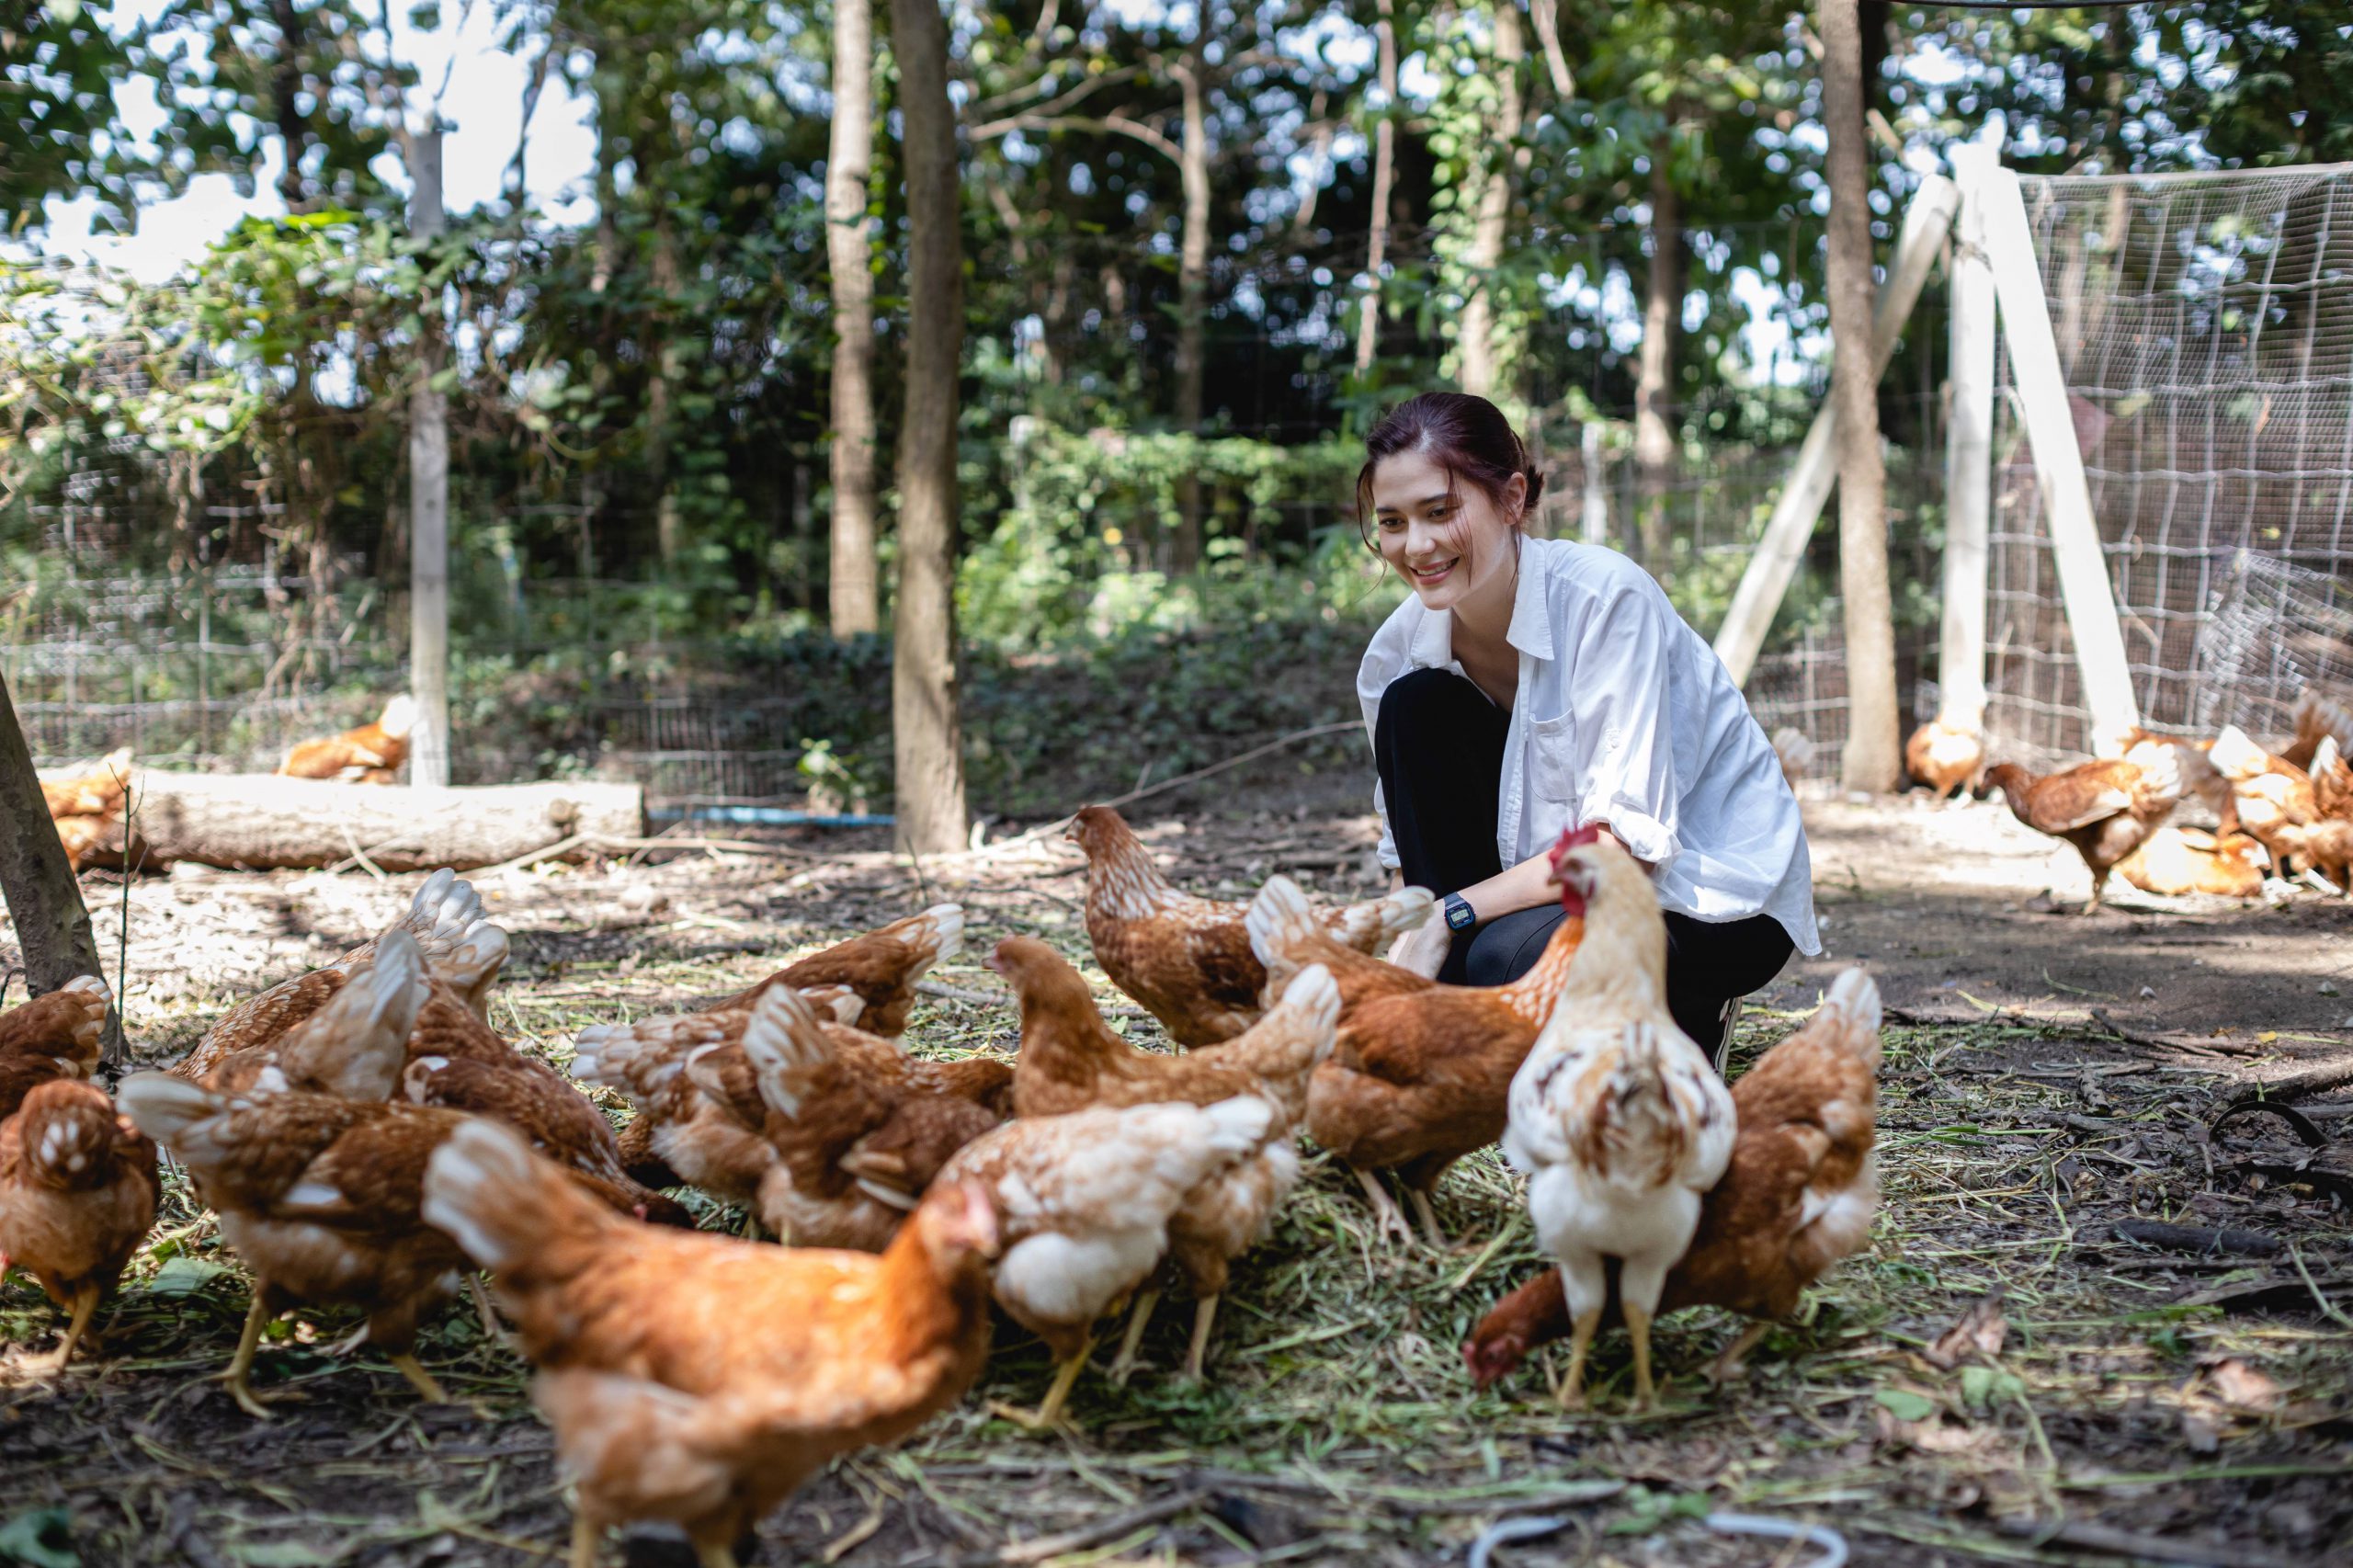 มารีญา ทูตองค์กรพิทักษ์สัตว์แห่งโลก ประเทศไทย ชวนฟังเสวนาเปิดเบื้องลึกวิกฤตควันพิษข้าวโพดอาหารสัตว์ : ใครต้องรับผิดชอบ : 7 มิถุนายนนี้